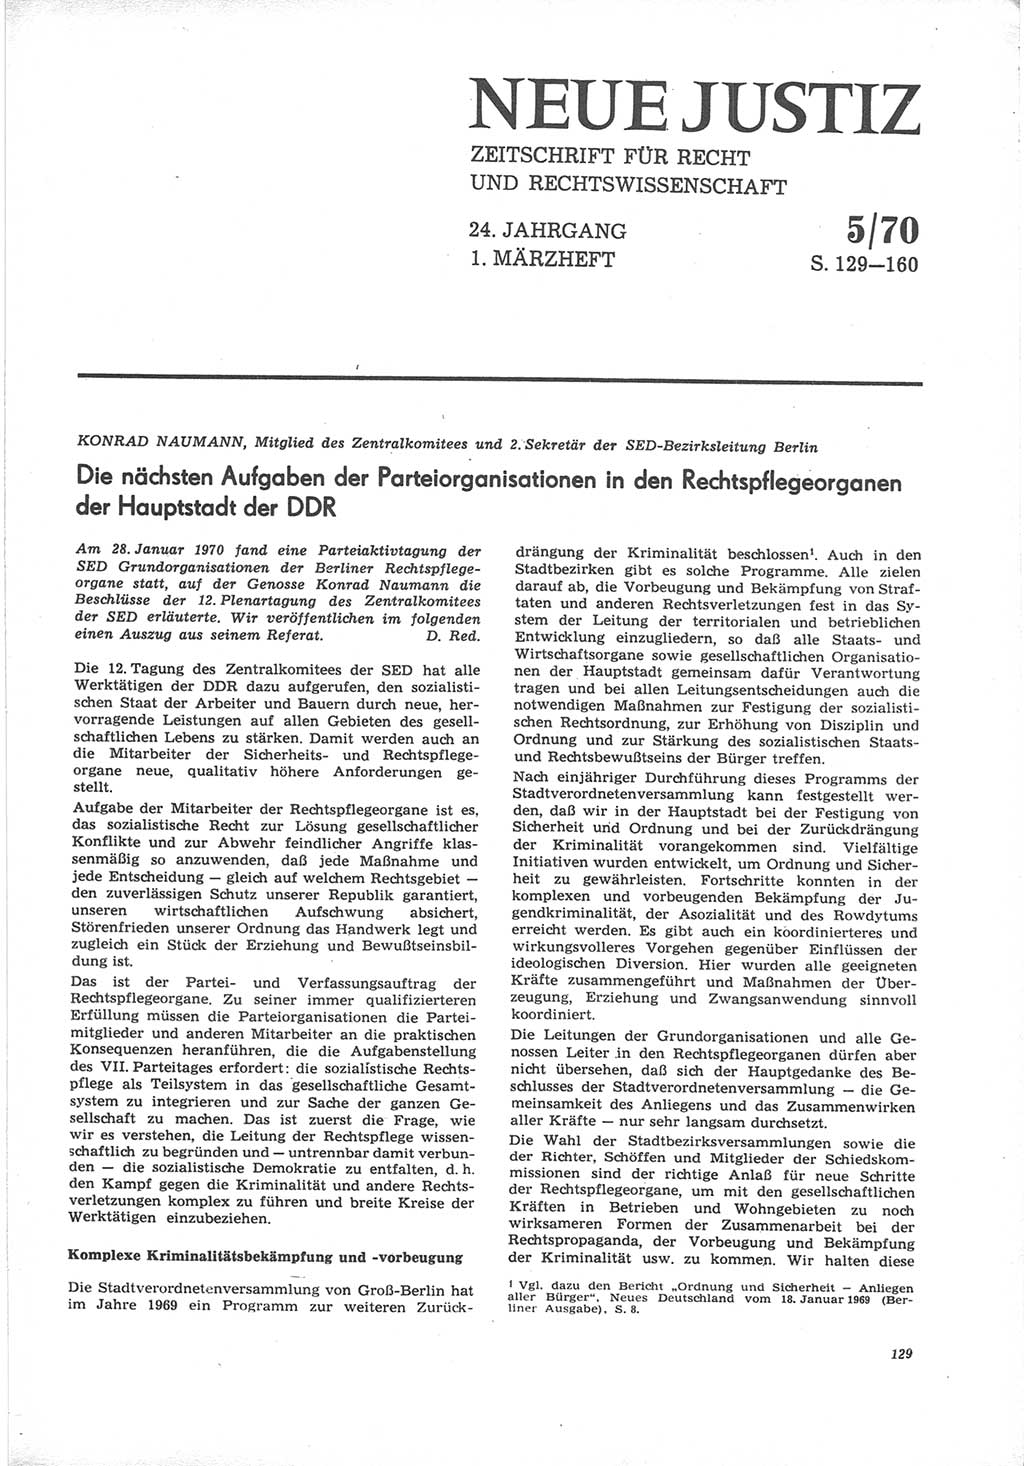 Neue Justiz (NJ), Zeitschrift für Recht und Rechtswissenschaft [Deutsche Demokratische Republik (DDR)], 24. Jahrgang 1970, Seite 129 (NJ DDR 1970, S. 129)